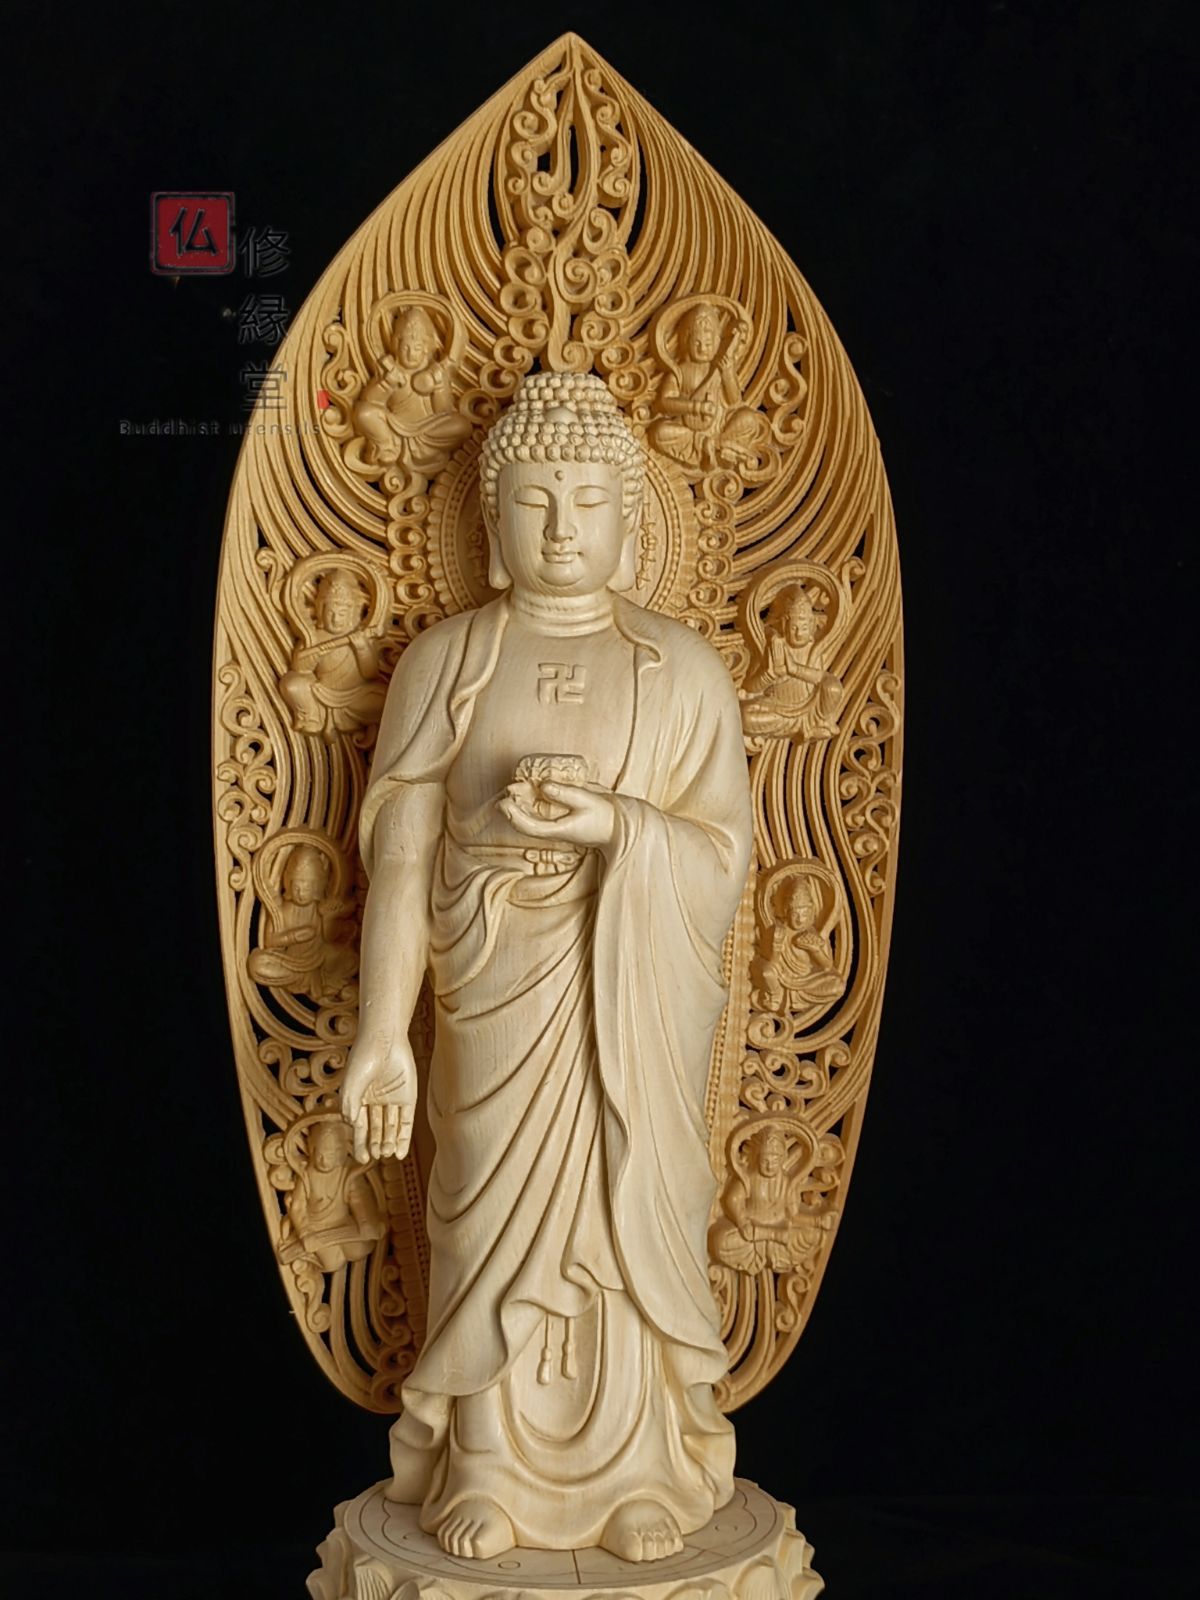 修縁堂】最高級 木彫仏像 阿弥陀三尊立像 彫刻 一刀彫 天然木檜材 仏教 